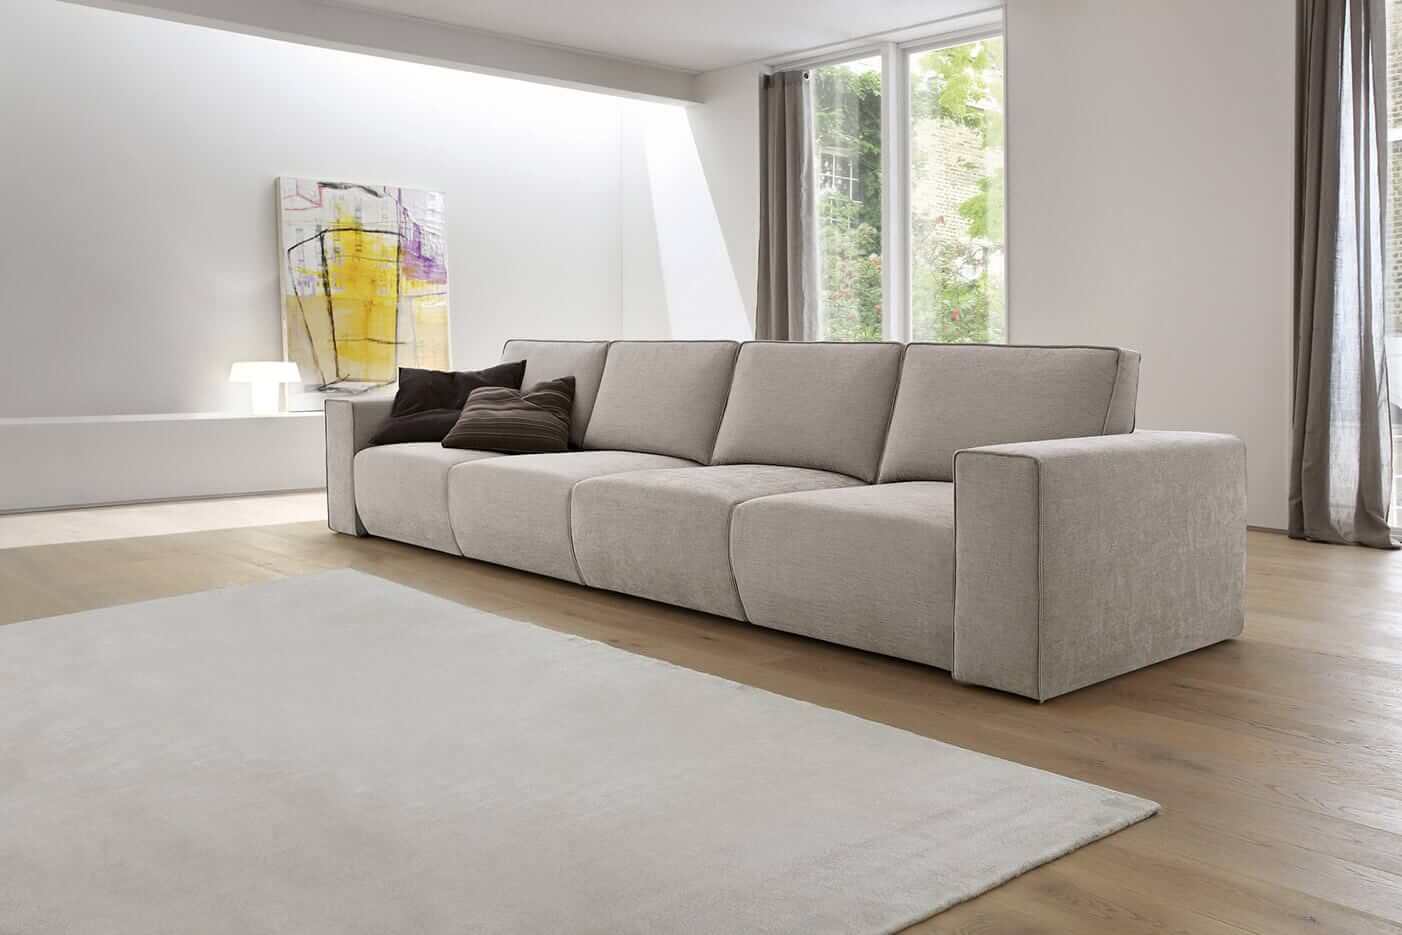 A Byron kitolható ülésű kanapé kiemeli az egyszerű formákat, a minimalista stílus jellegzetességét, vonalait és párnamentes üléseit